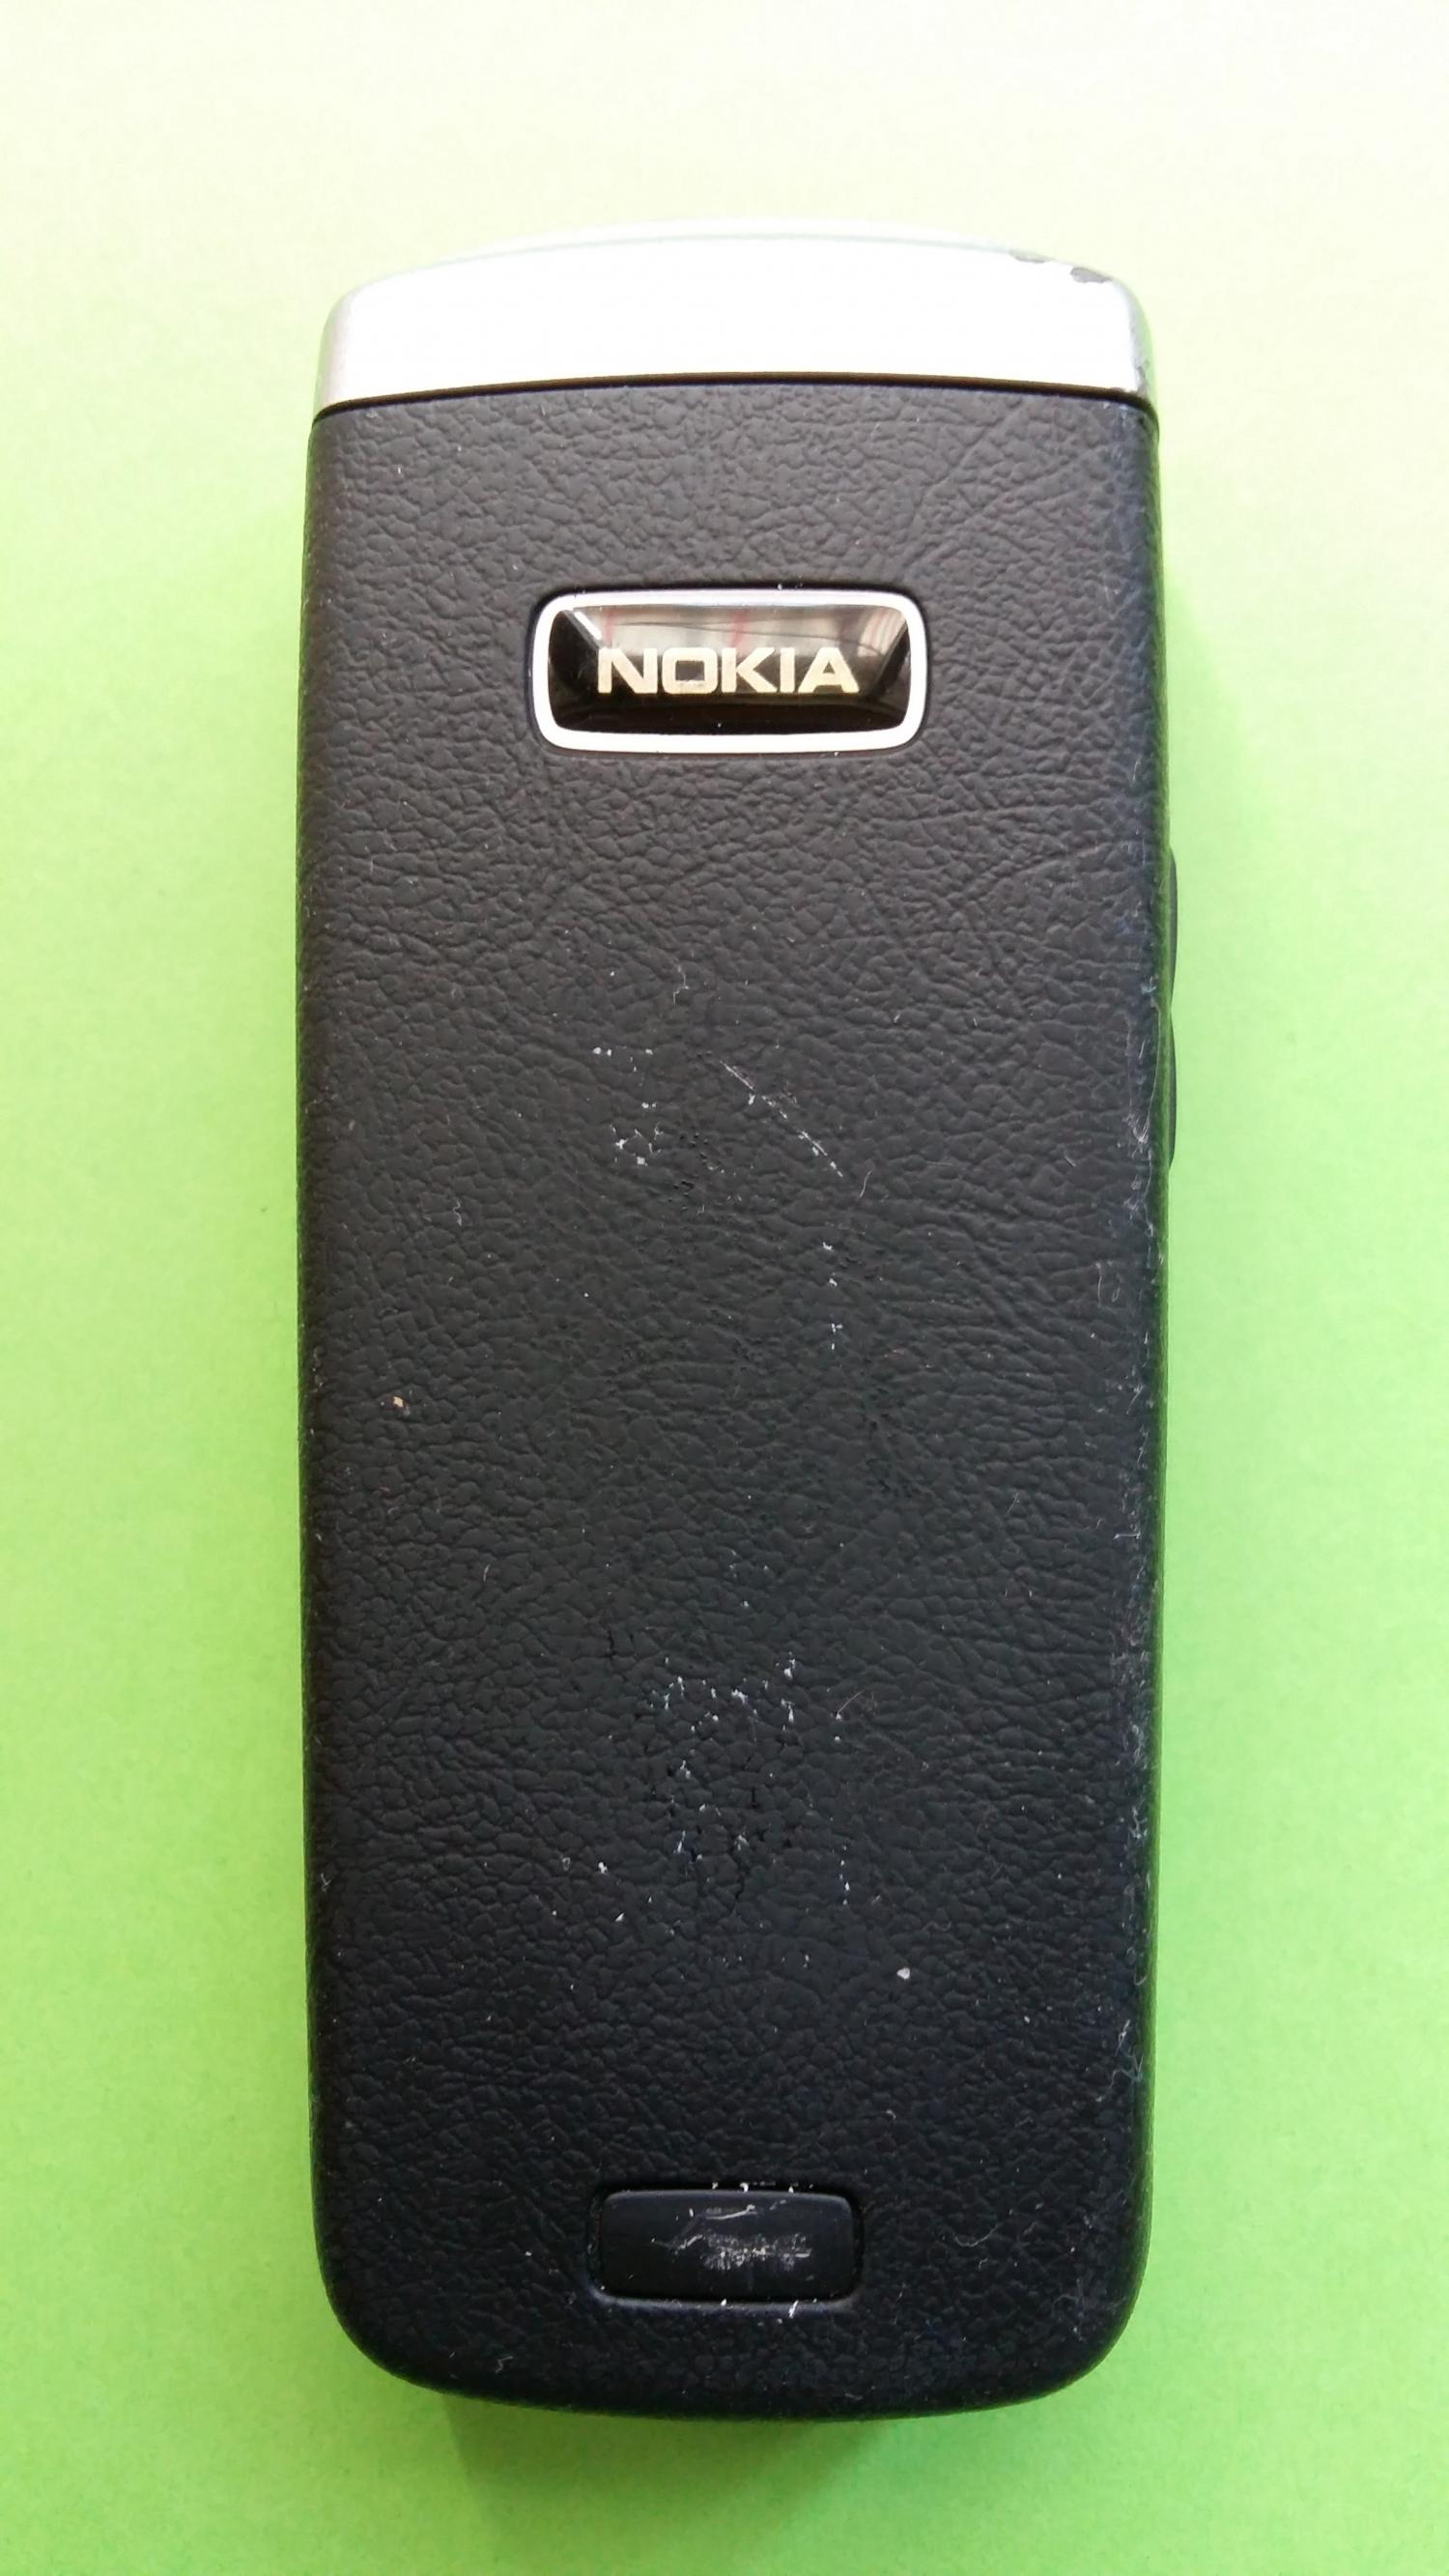 image-7323270-Nokia 6021 (3)2.jpg